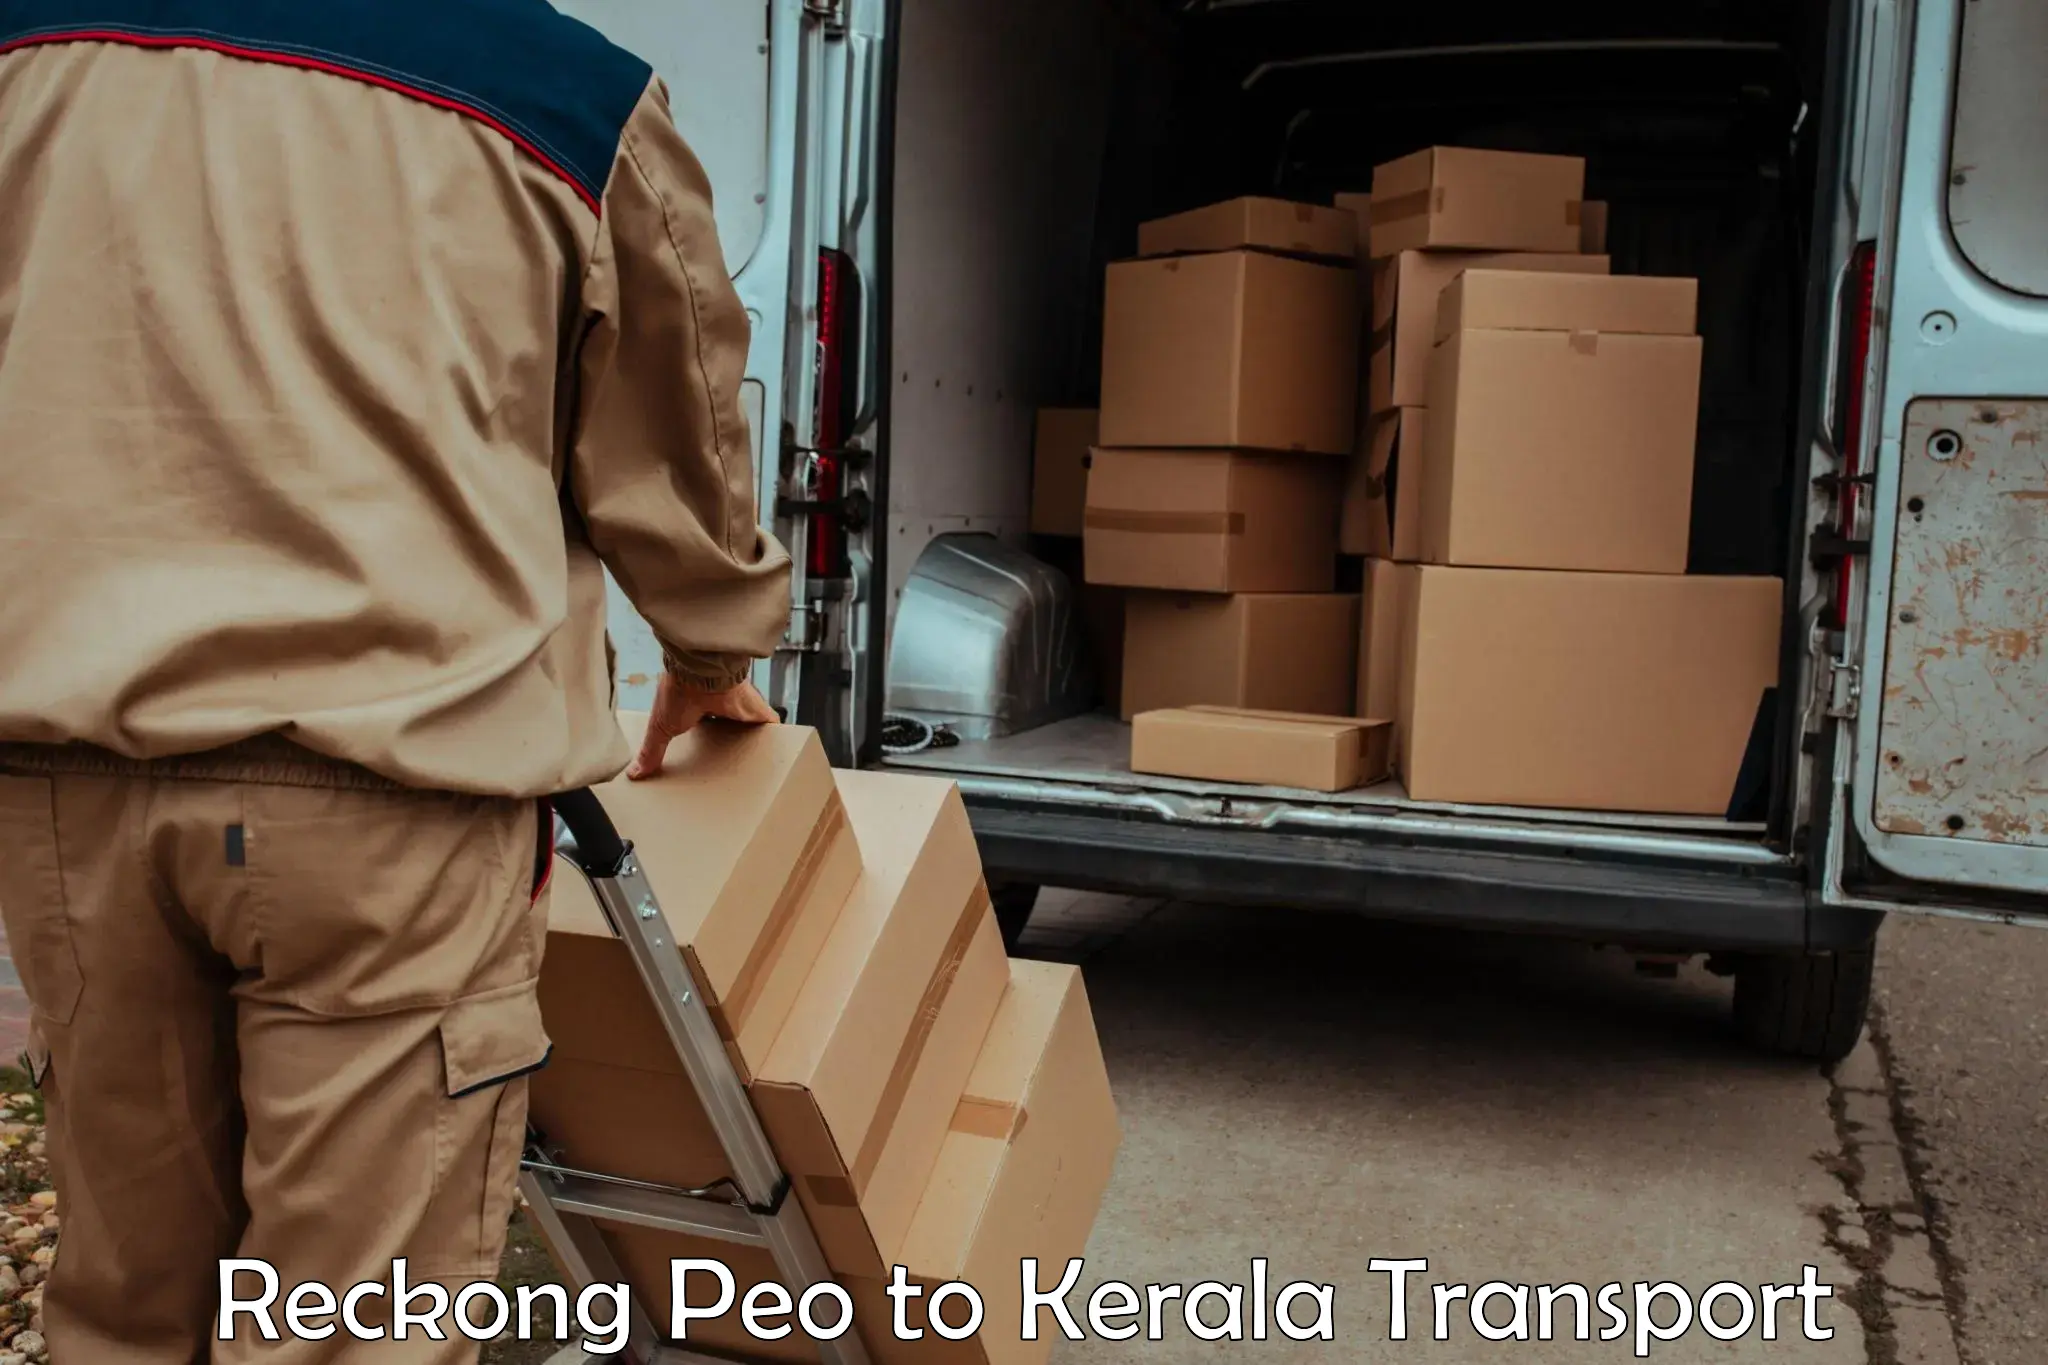 Furniture transport service Reckong Peo to Kalanjoor